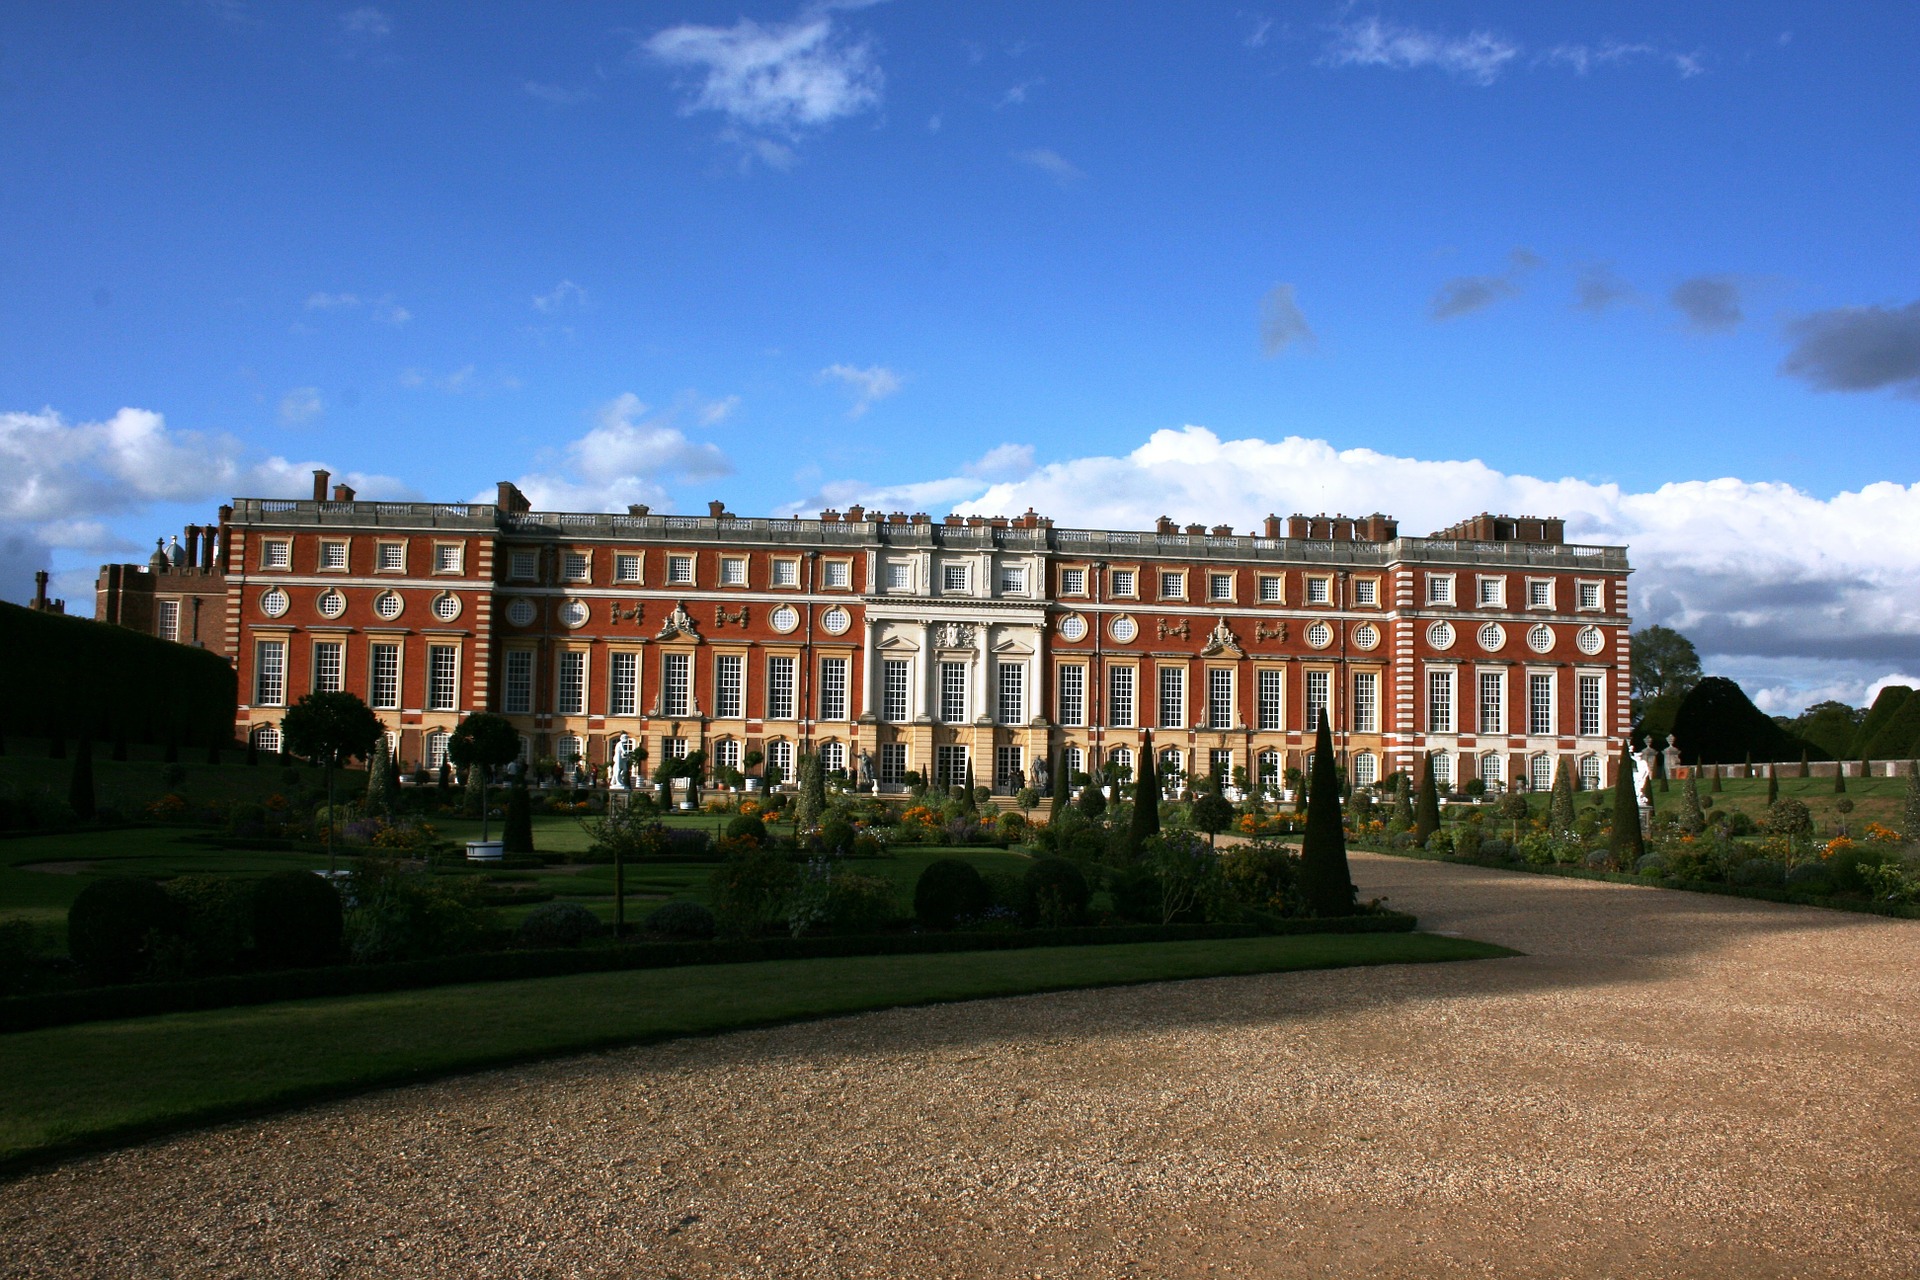 Royal Tour of London - Hampton Court Palace